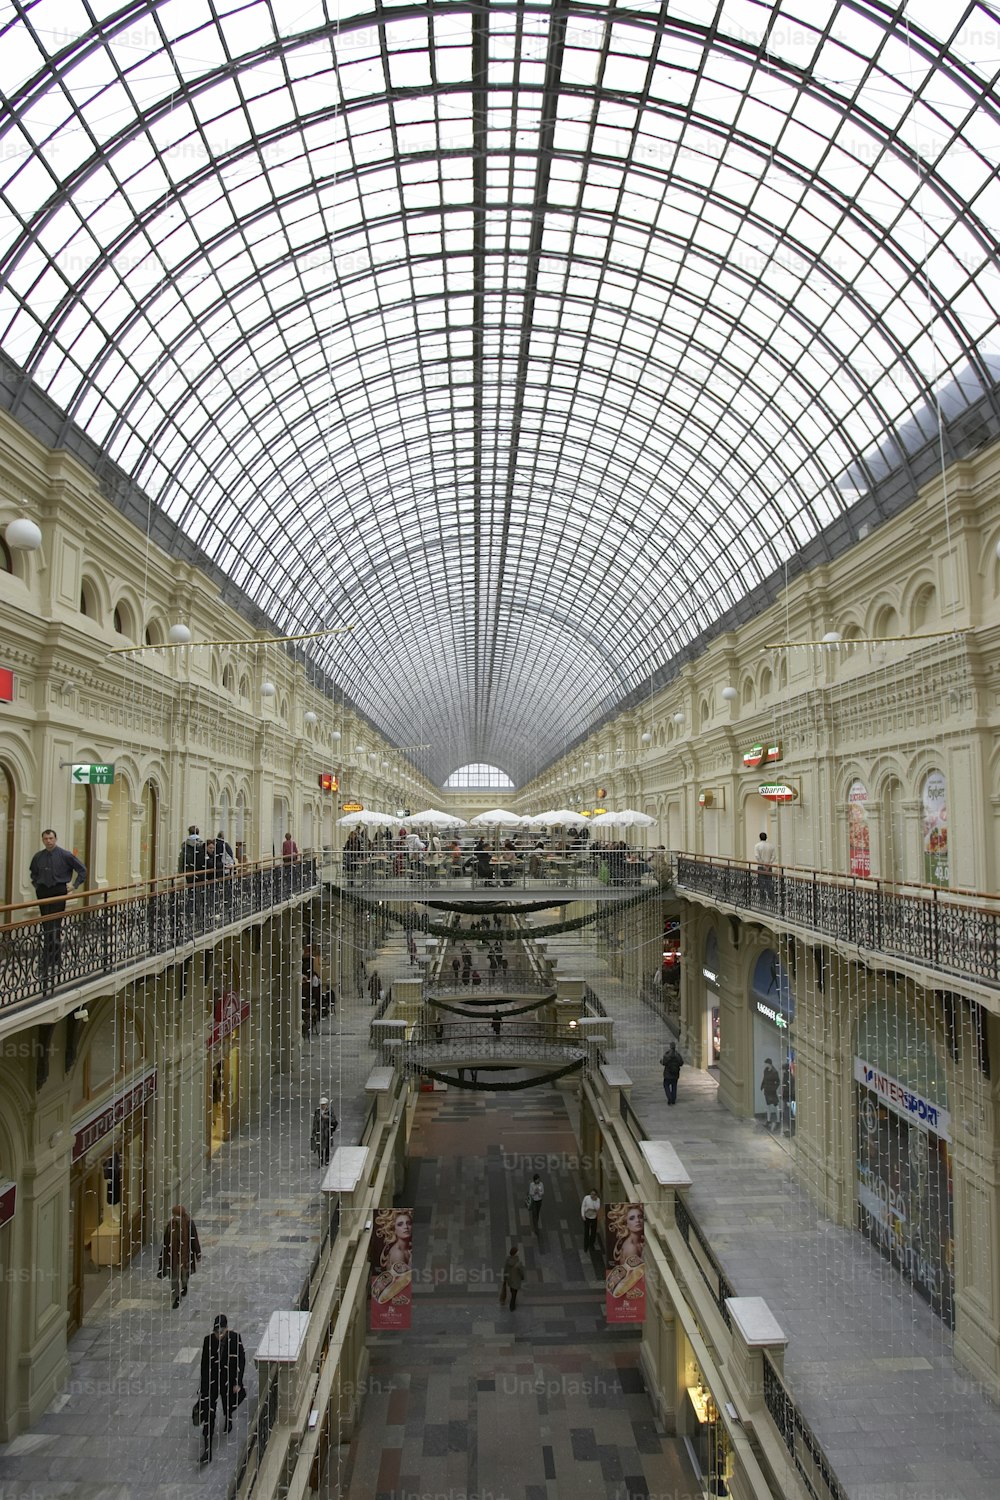 Il grande negozio a Kitai-gorod di Mosca, di fronte alla Piazza Rossa. Girato nel 2007.